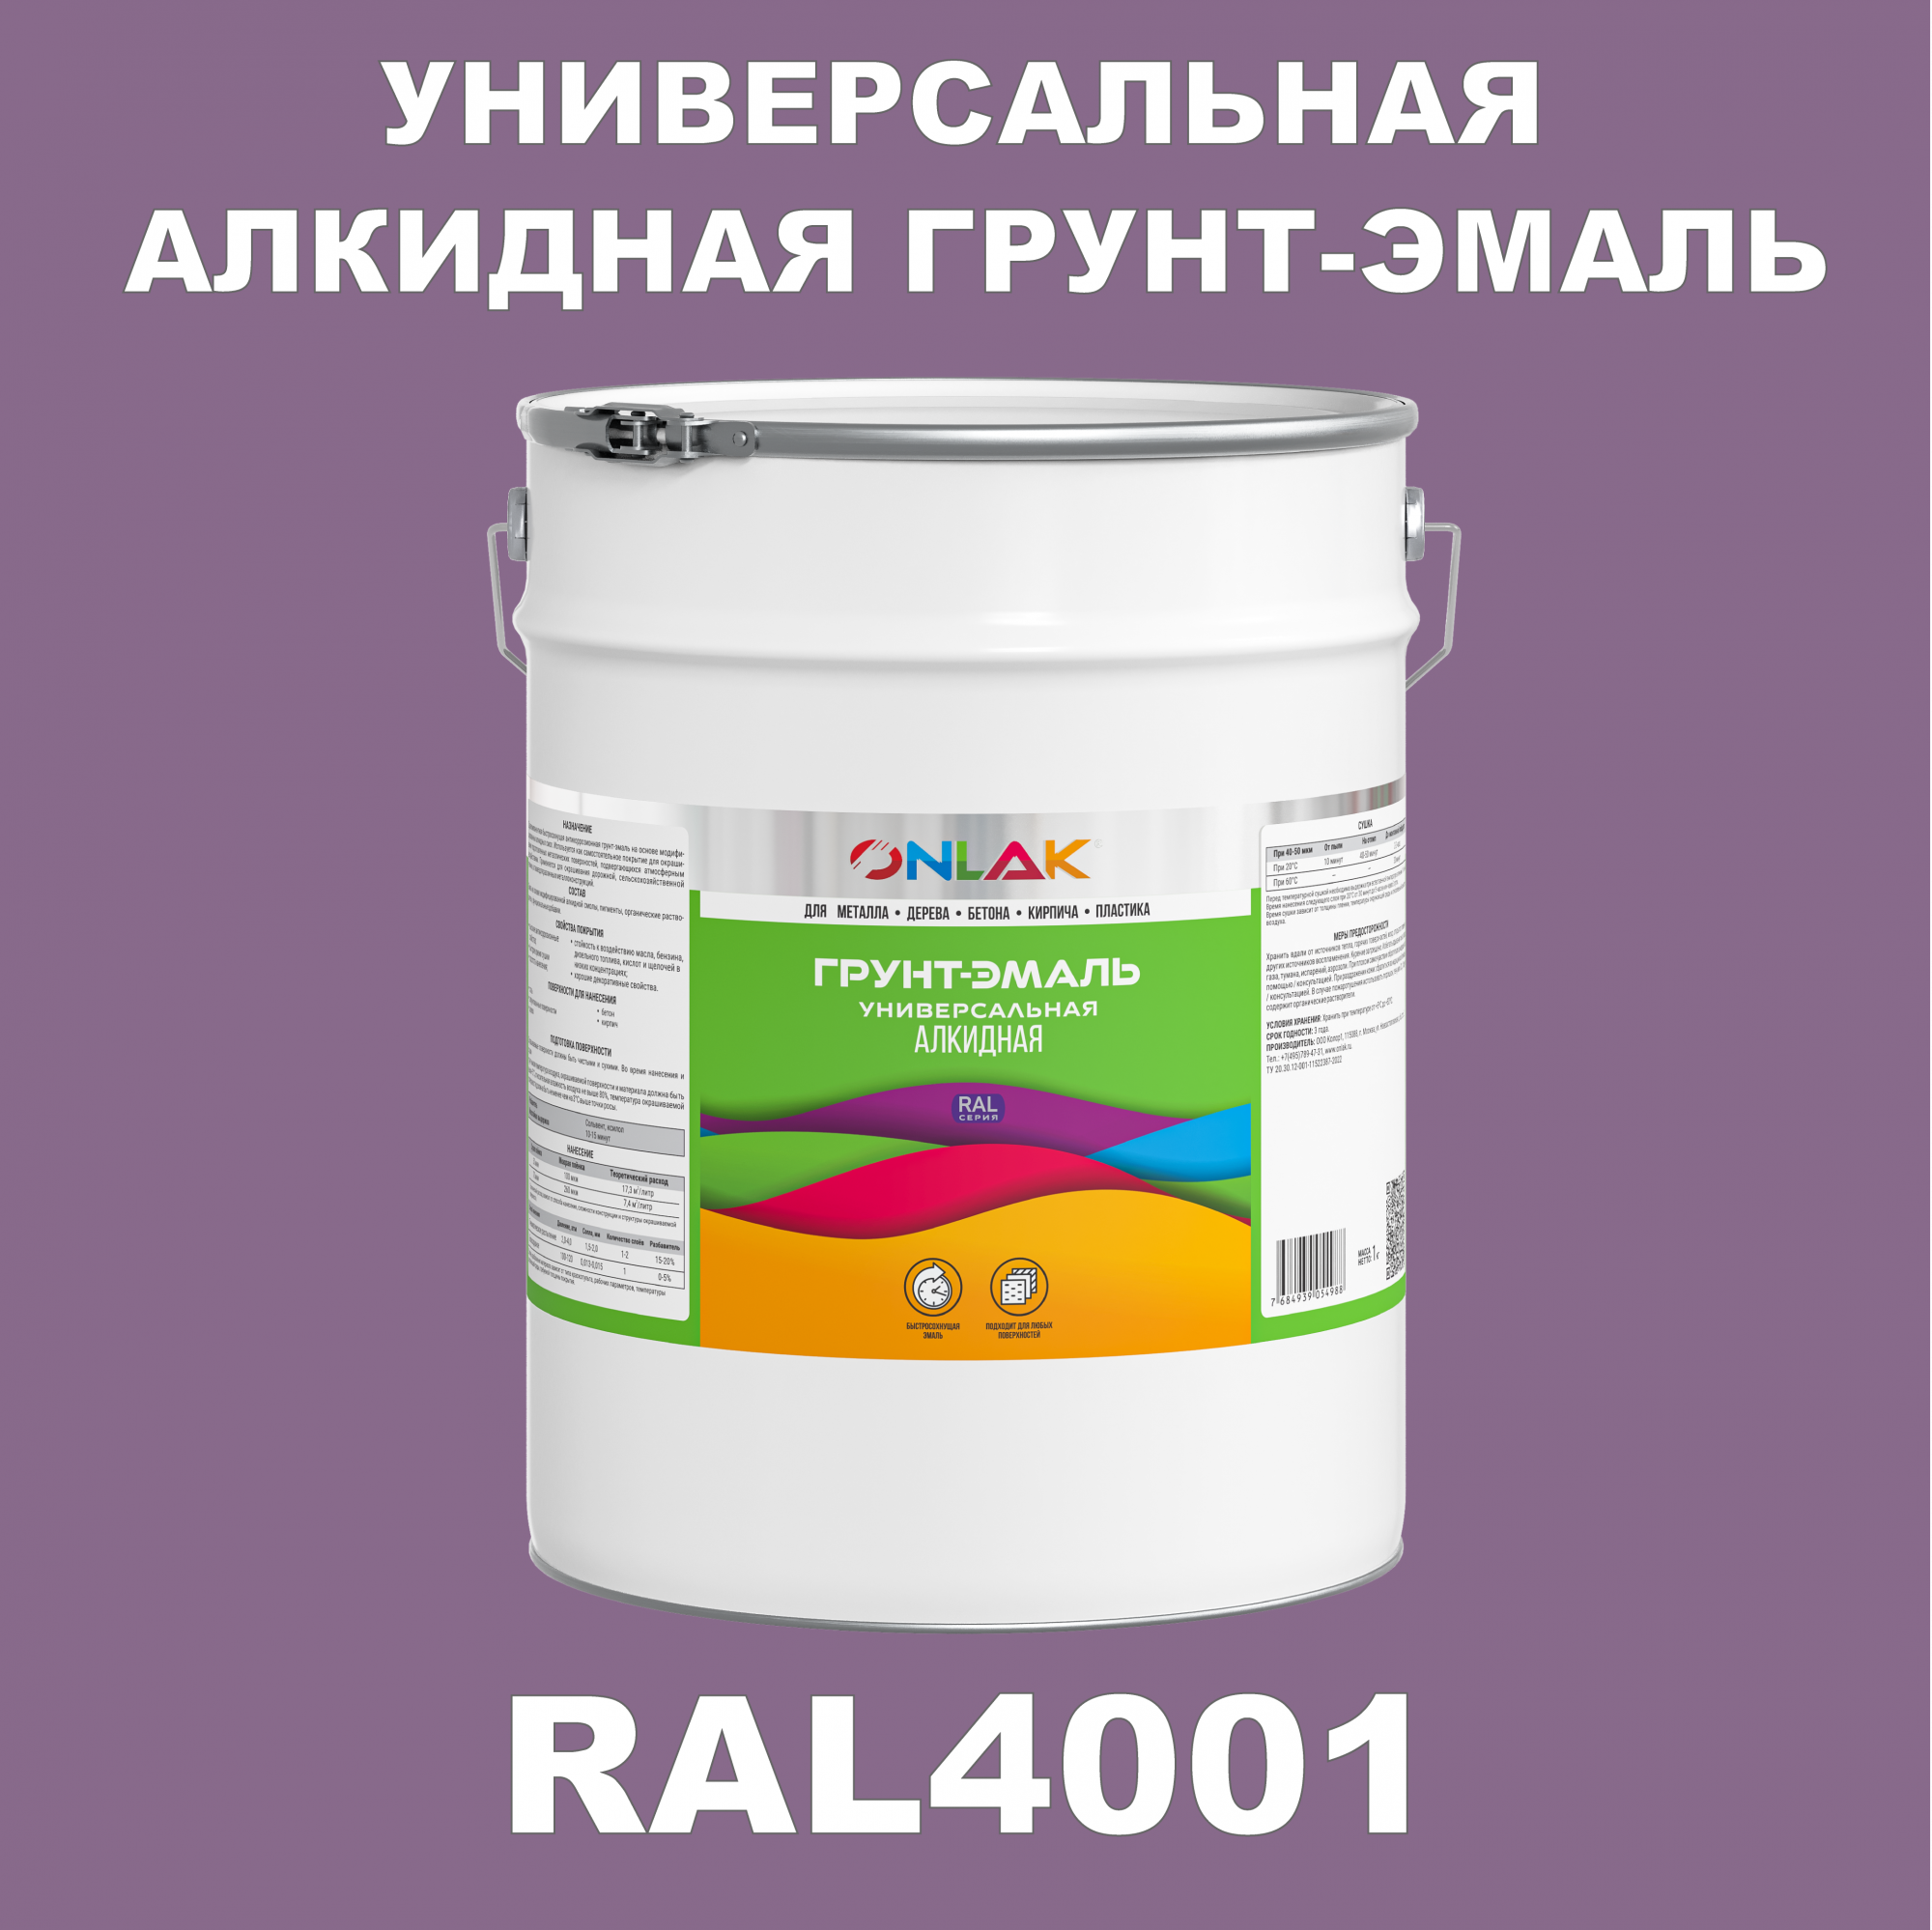 Грунт-эмаль ONLAK 1К RAL4001 антикоррозионная алкидная по металлу по ржавчине 20 кг антикоррозионная грунт эмаль onlak ral 4004 фиолетовый 657 мл